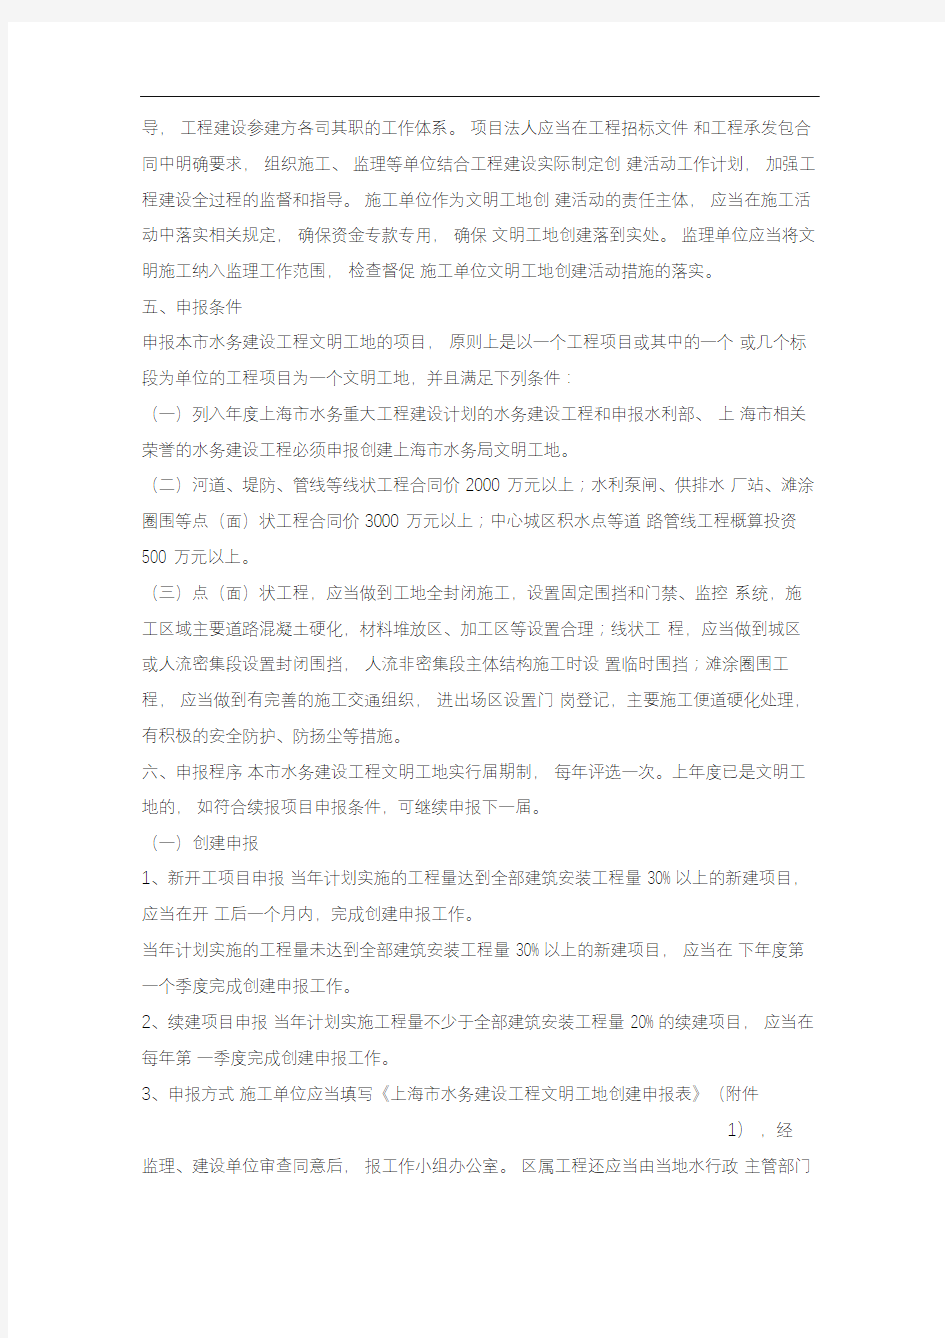 上海市水务局关于印发《上海市水务建设工程文明工地创建管理办法》的通知